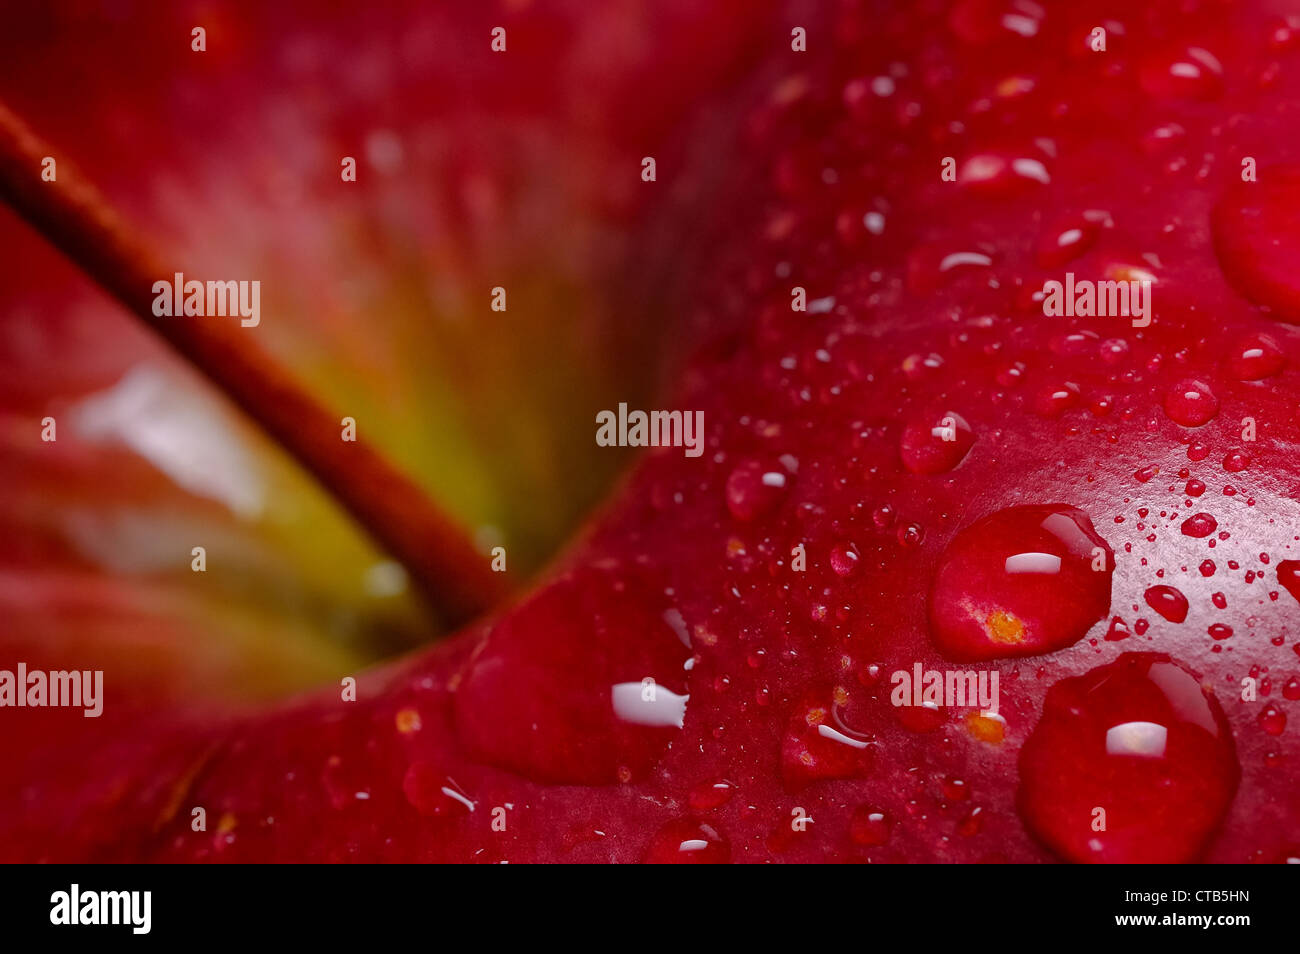 Close-up of red apple avec de l'eau gouttes ; fond noir Banque D'Images